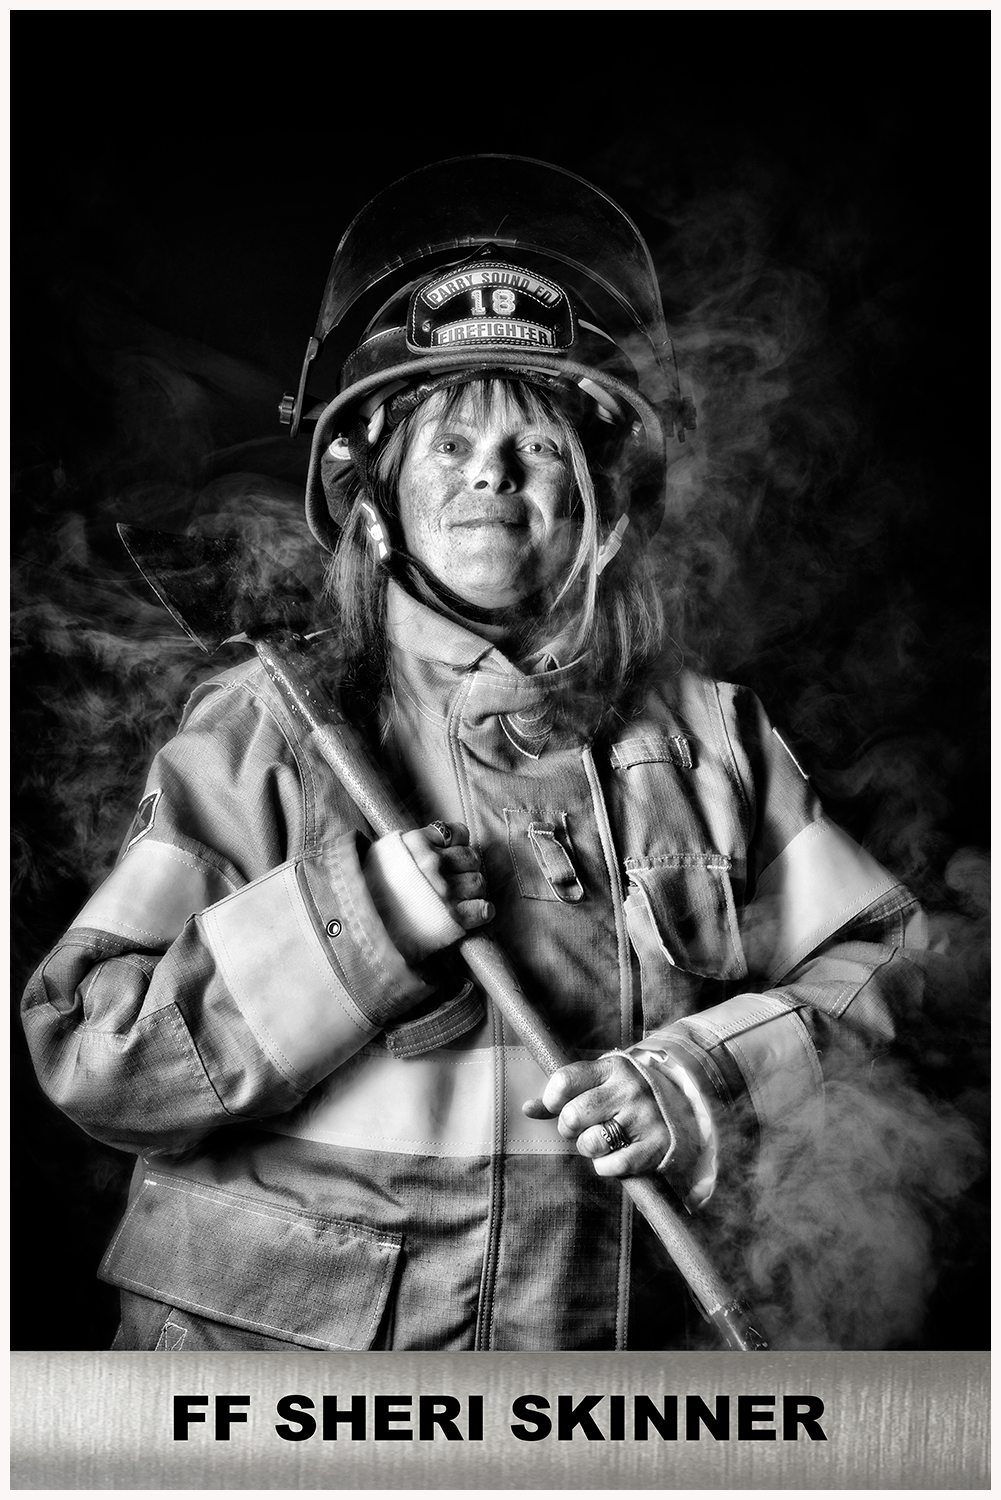 Firefighter Sheri Skinner